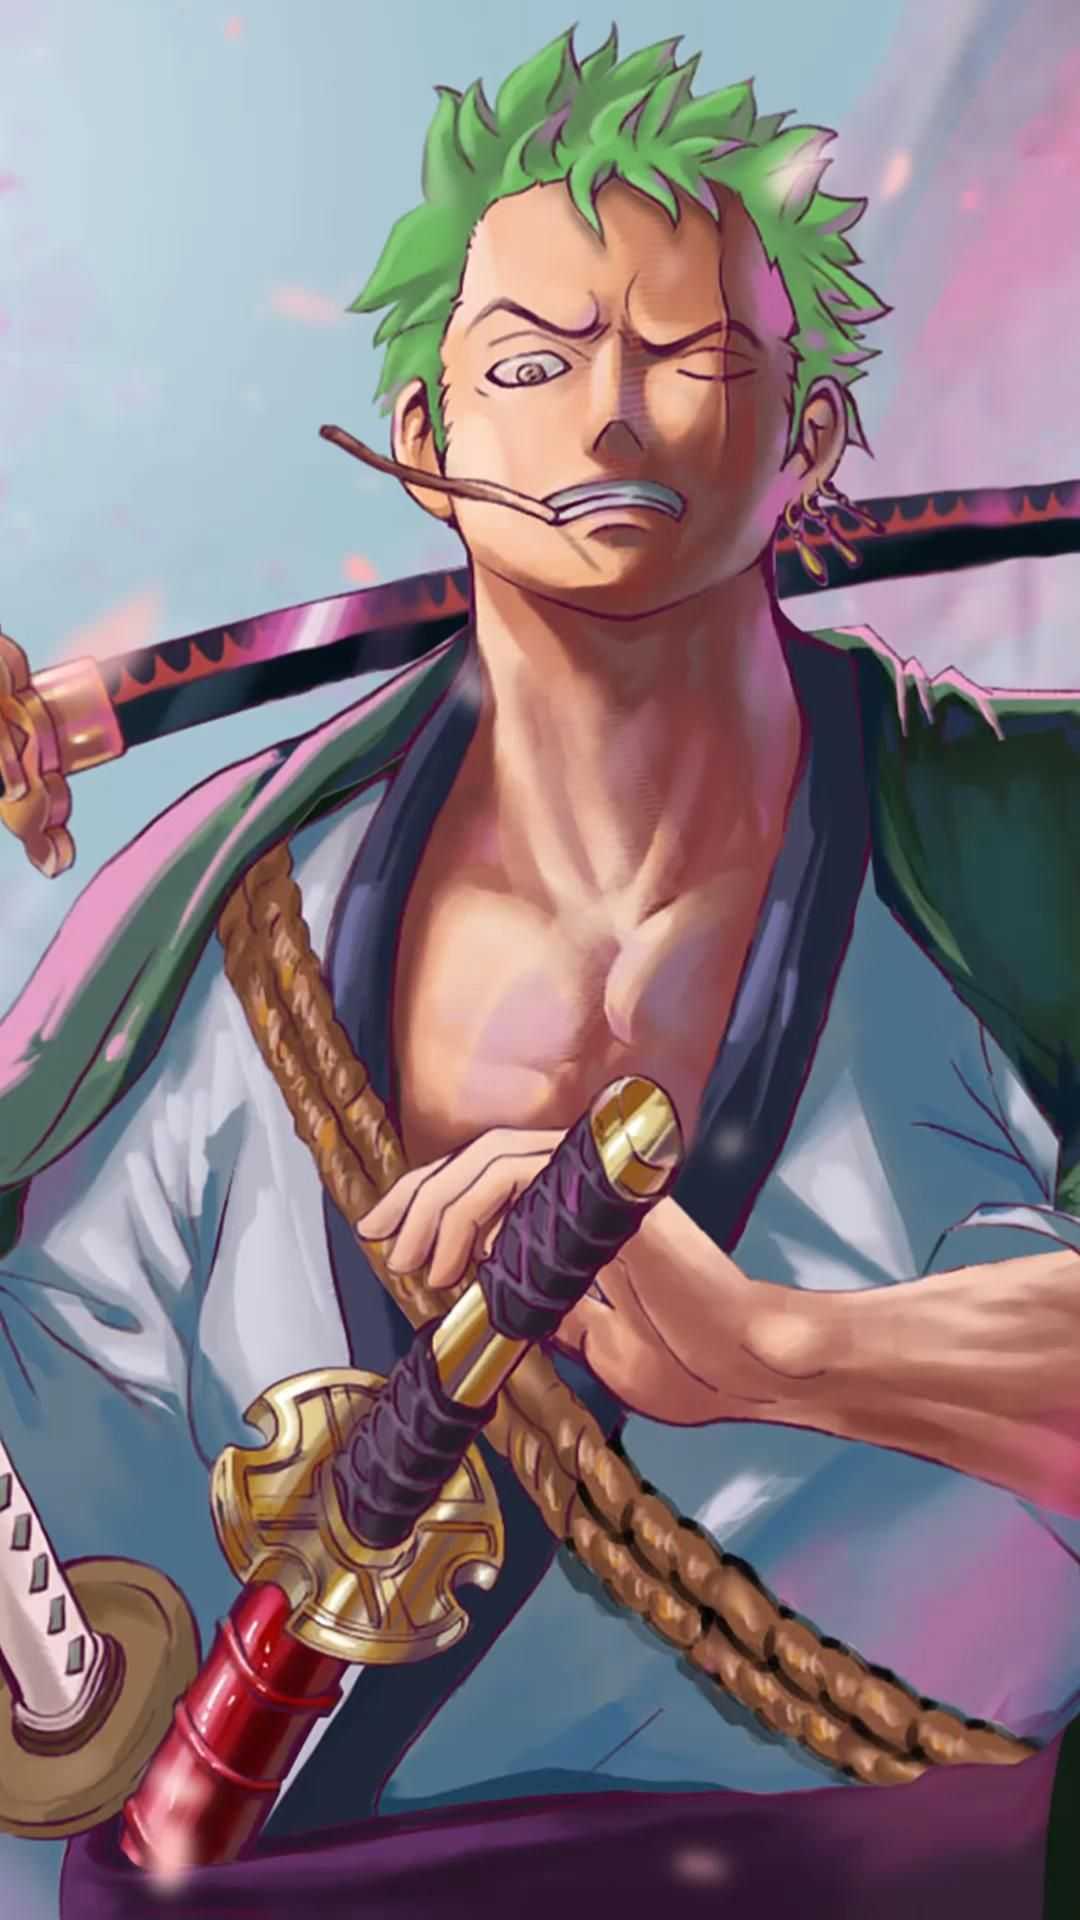 Tải Hình Nền One Piece Zoro Full HD Đẹp Nhất